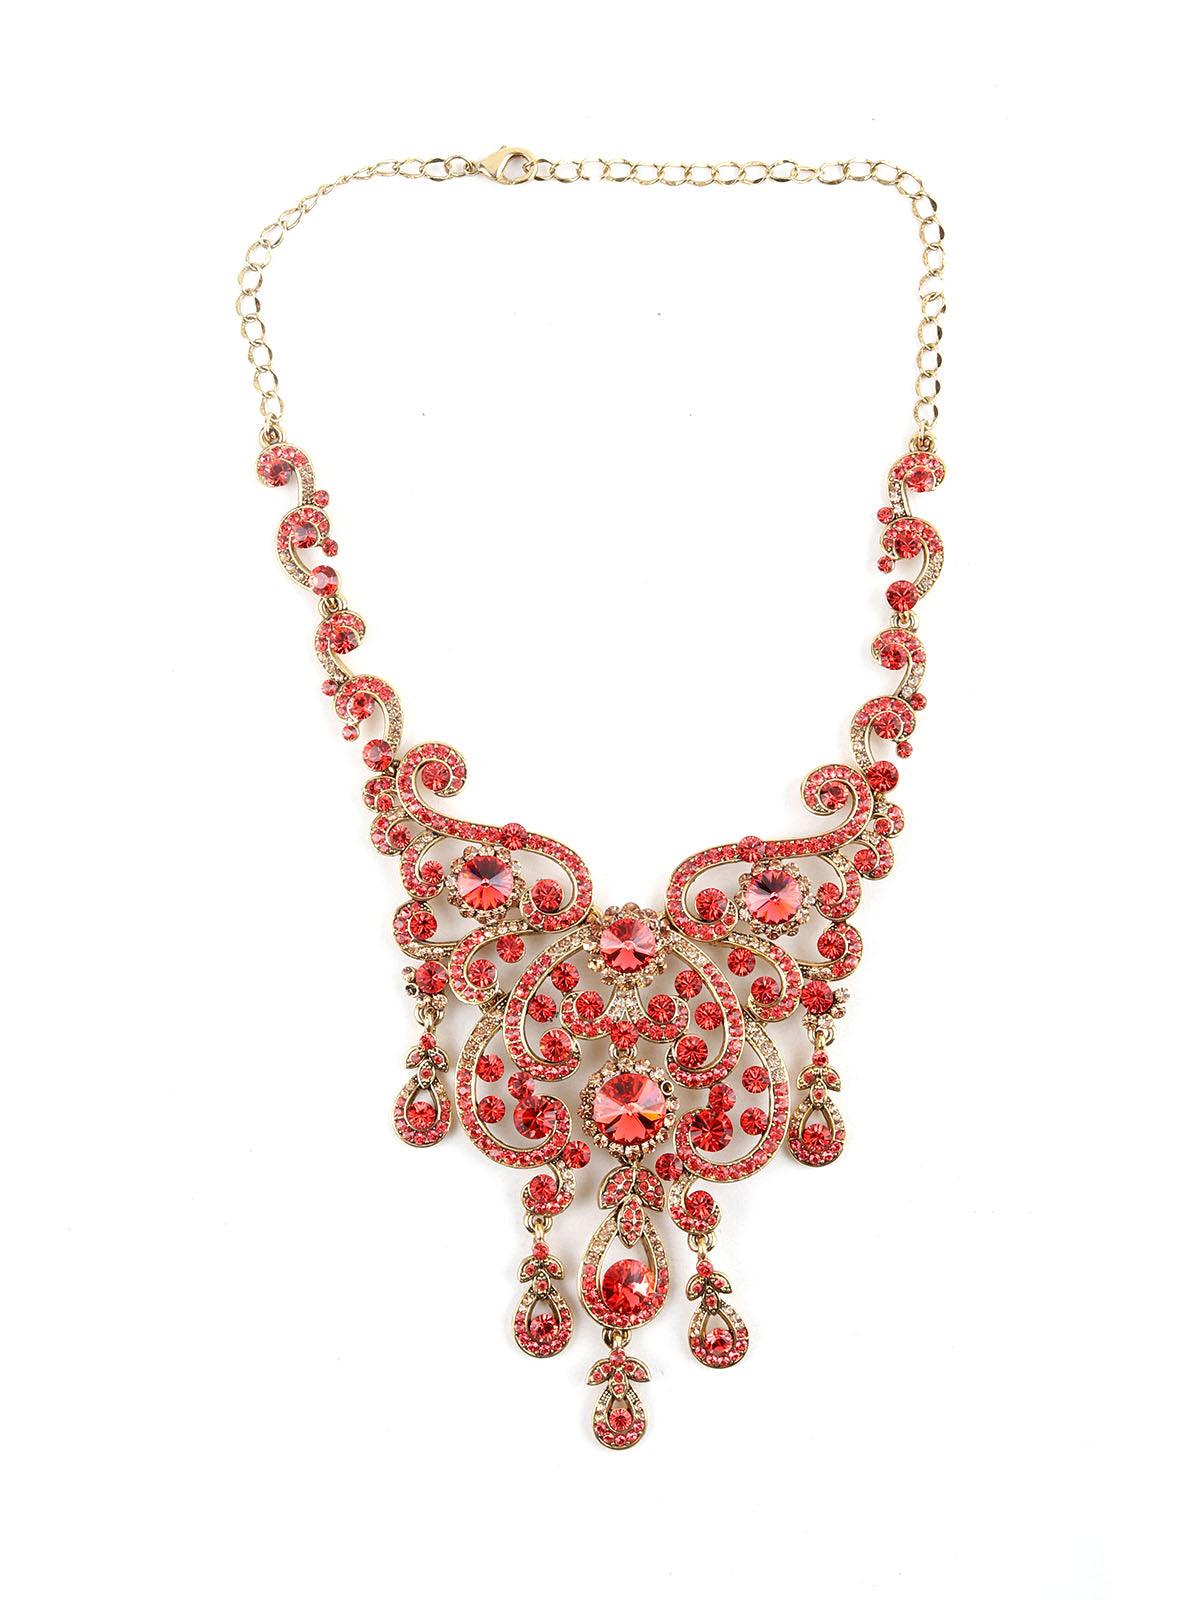 Red And Gold Embellished Chandelier Necklace Set - Odette